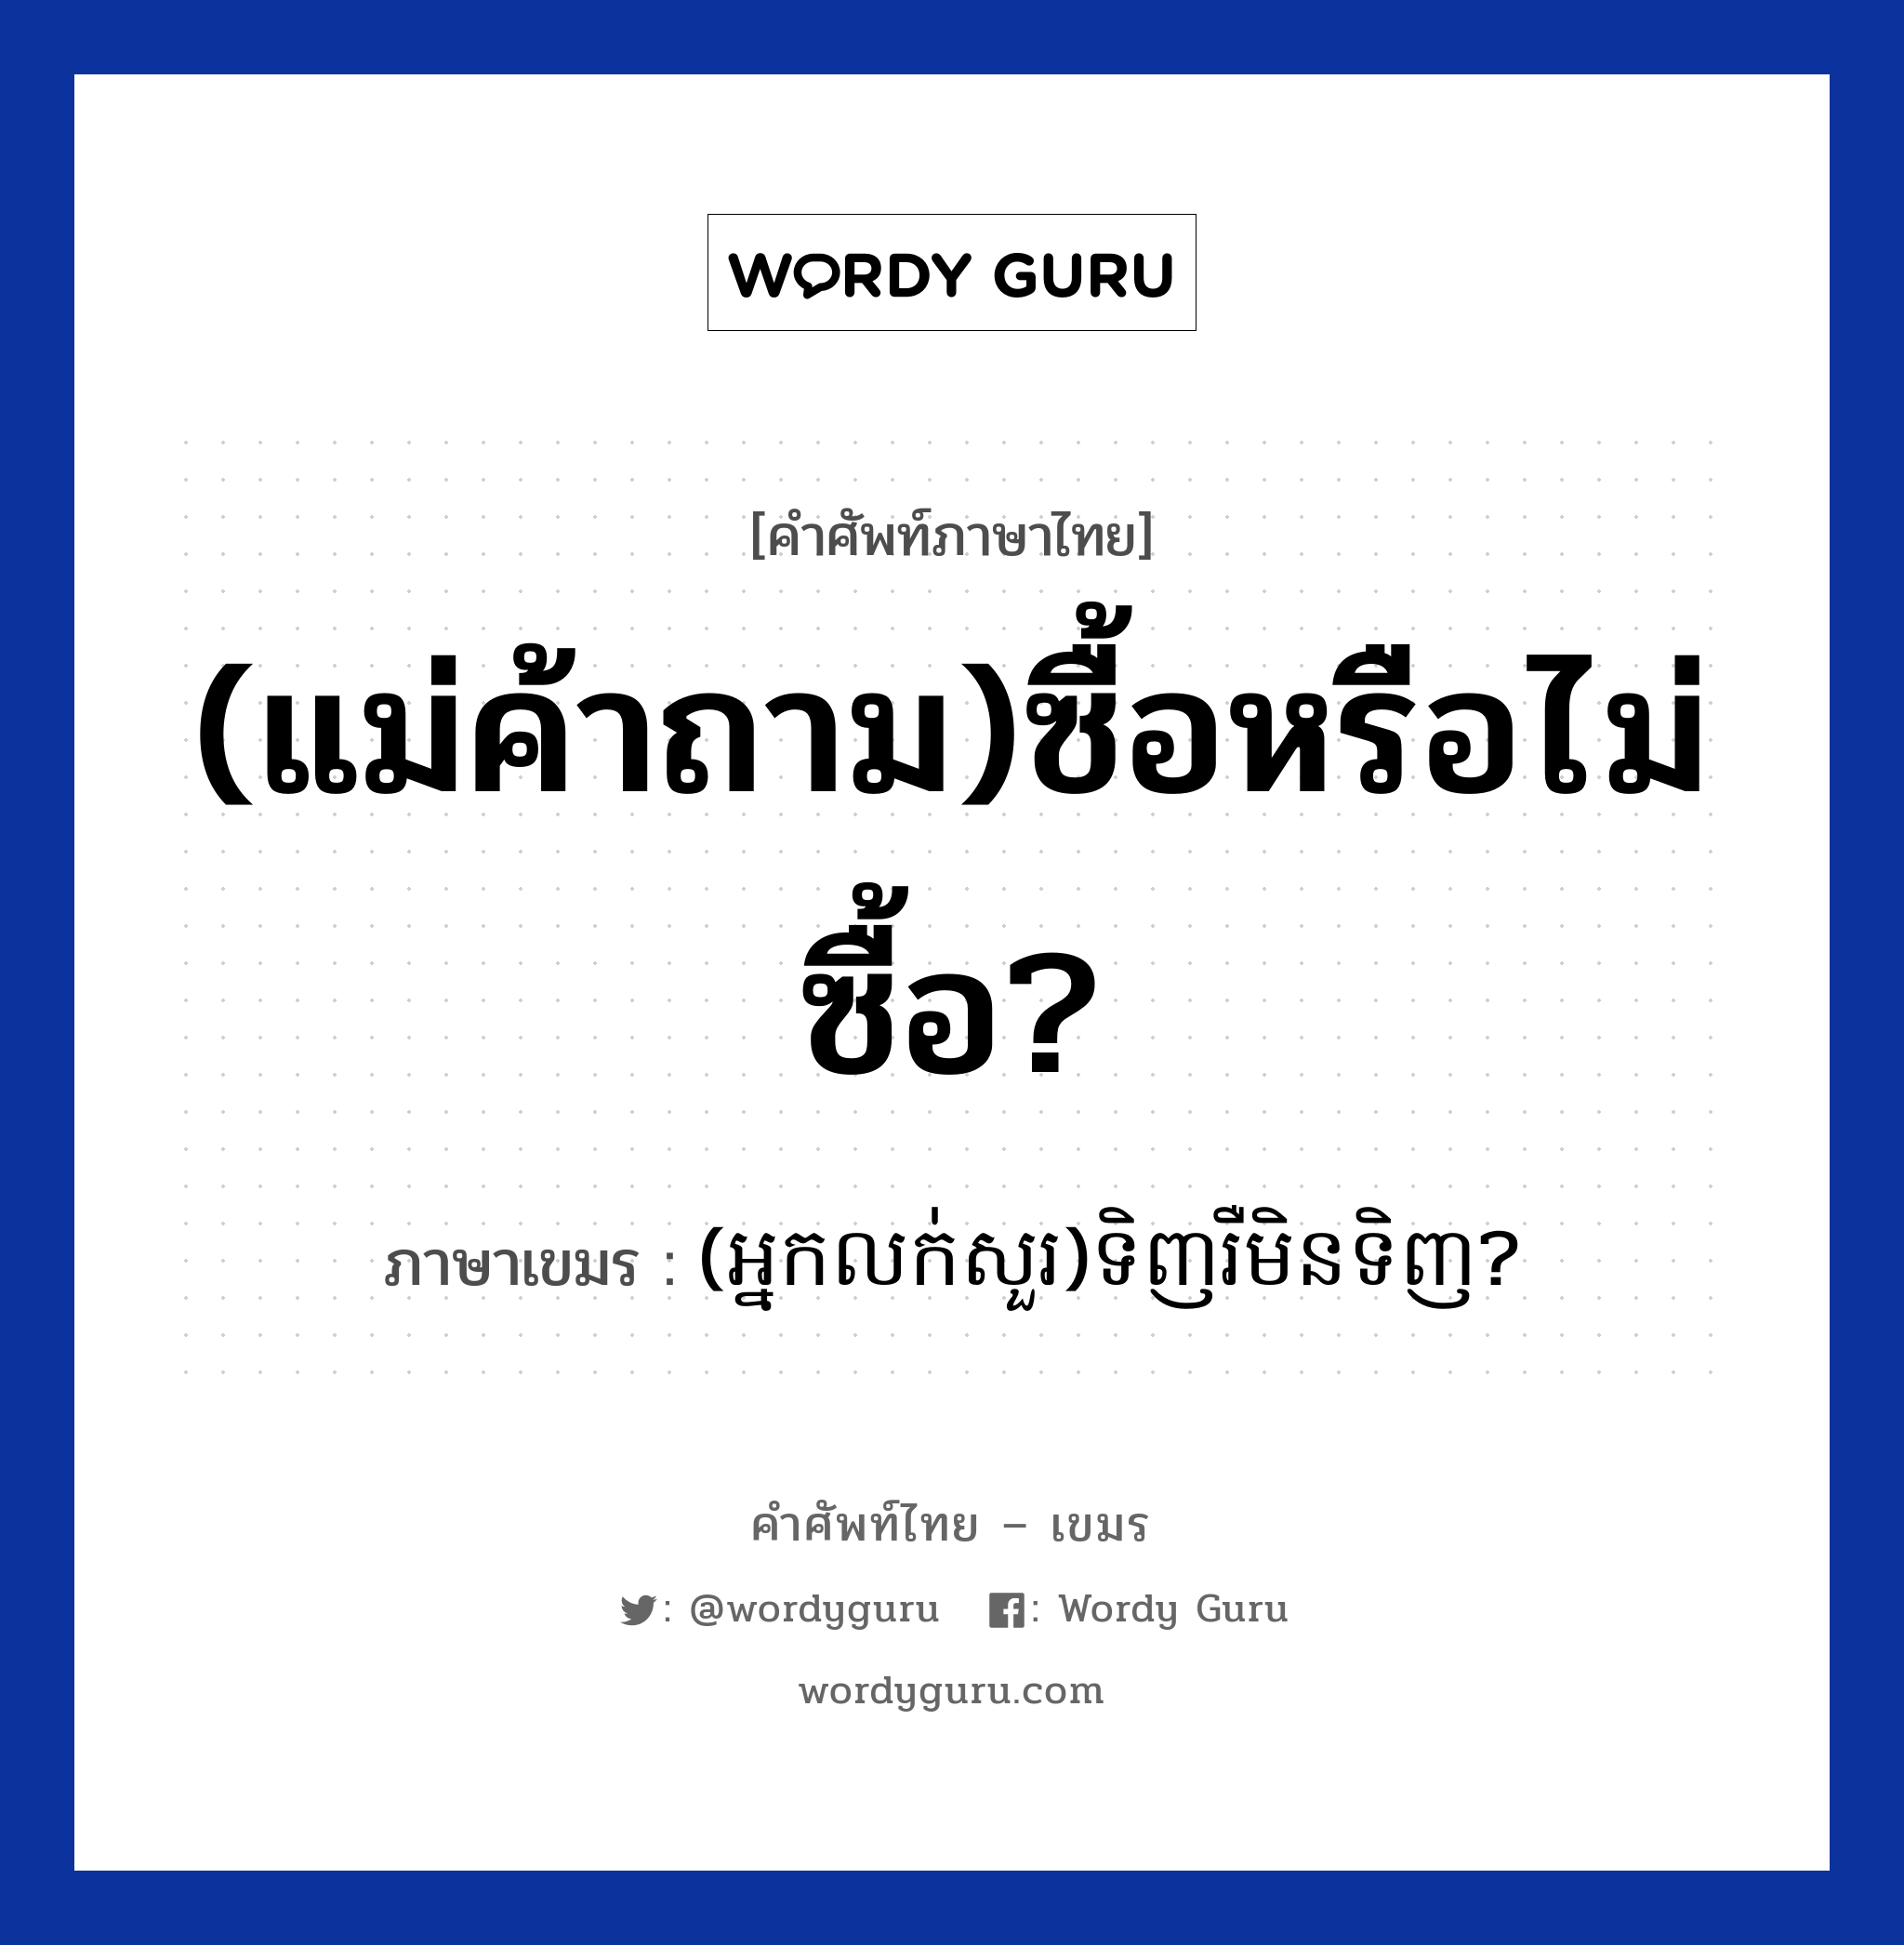 (แม่ค้าถาม)ซื้อหรือไม่ซื้อ? ภาษาเขมรคืออะไร, คำศัพท์ภาษาไทย - เขมร (แม่ค้าถาม)ซื้อหรือไม่ซื้อ? ภาษาเขมร (អ្នកលក់សួរ)ទិញរឺមិនទិញ? หมวด การซื้อของ (Neaklouksour)tinh reo men tinh? หมวด การซื้อของ